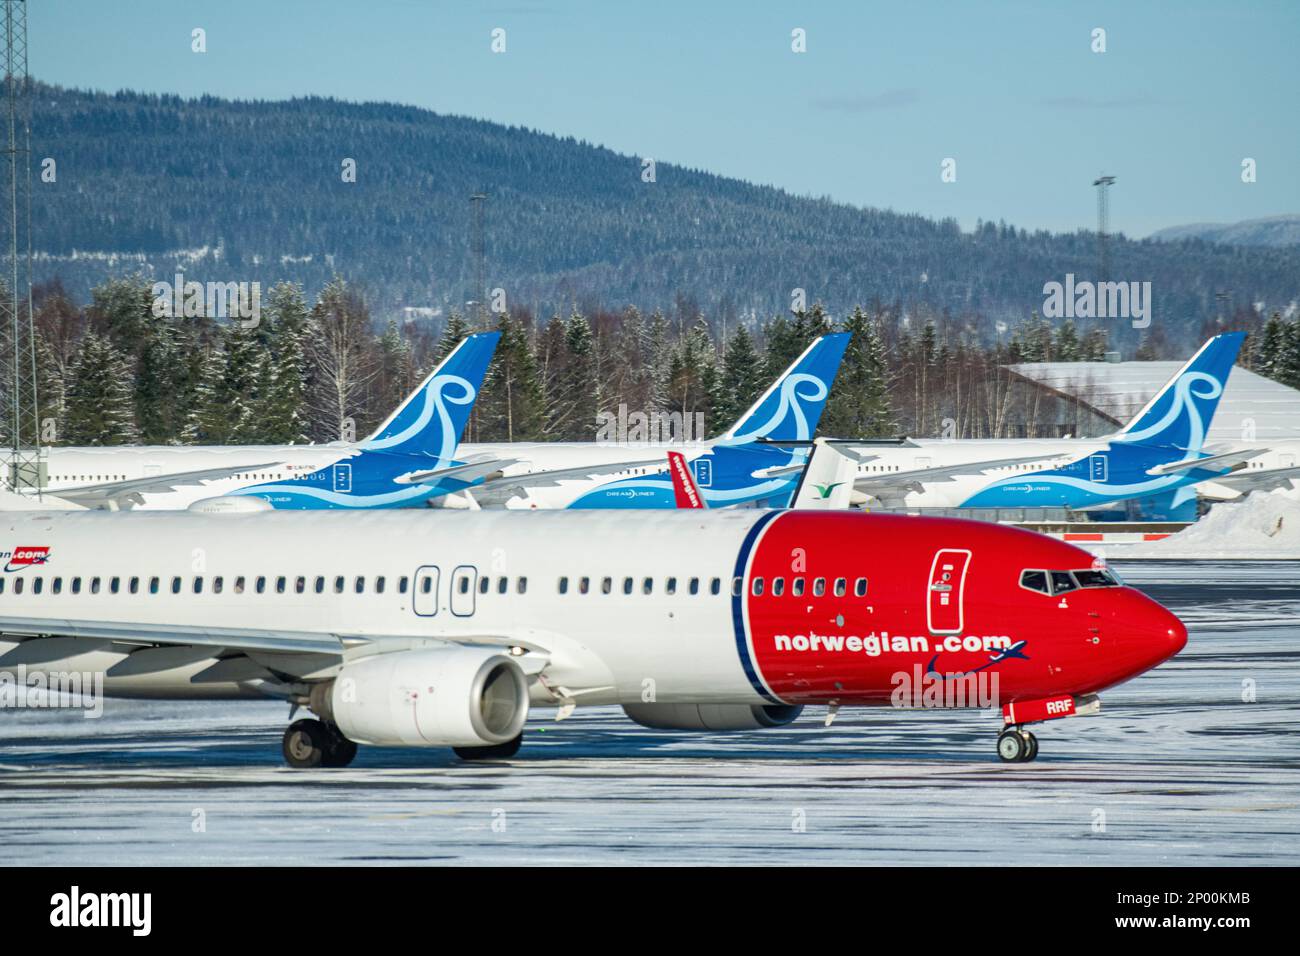 Norwegian airlines -Fotos und -Bildmaterial in hoher Auflösung - Seite 2 -  Alamy